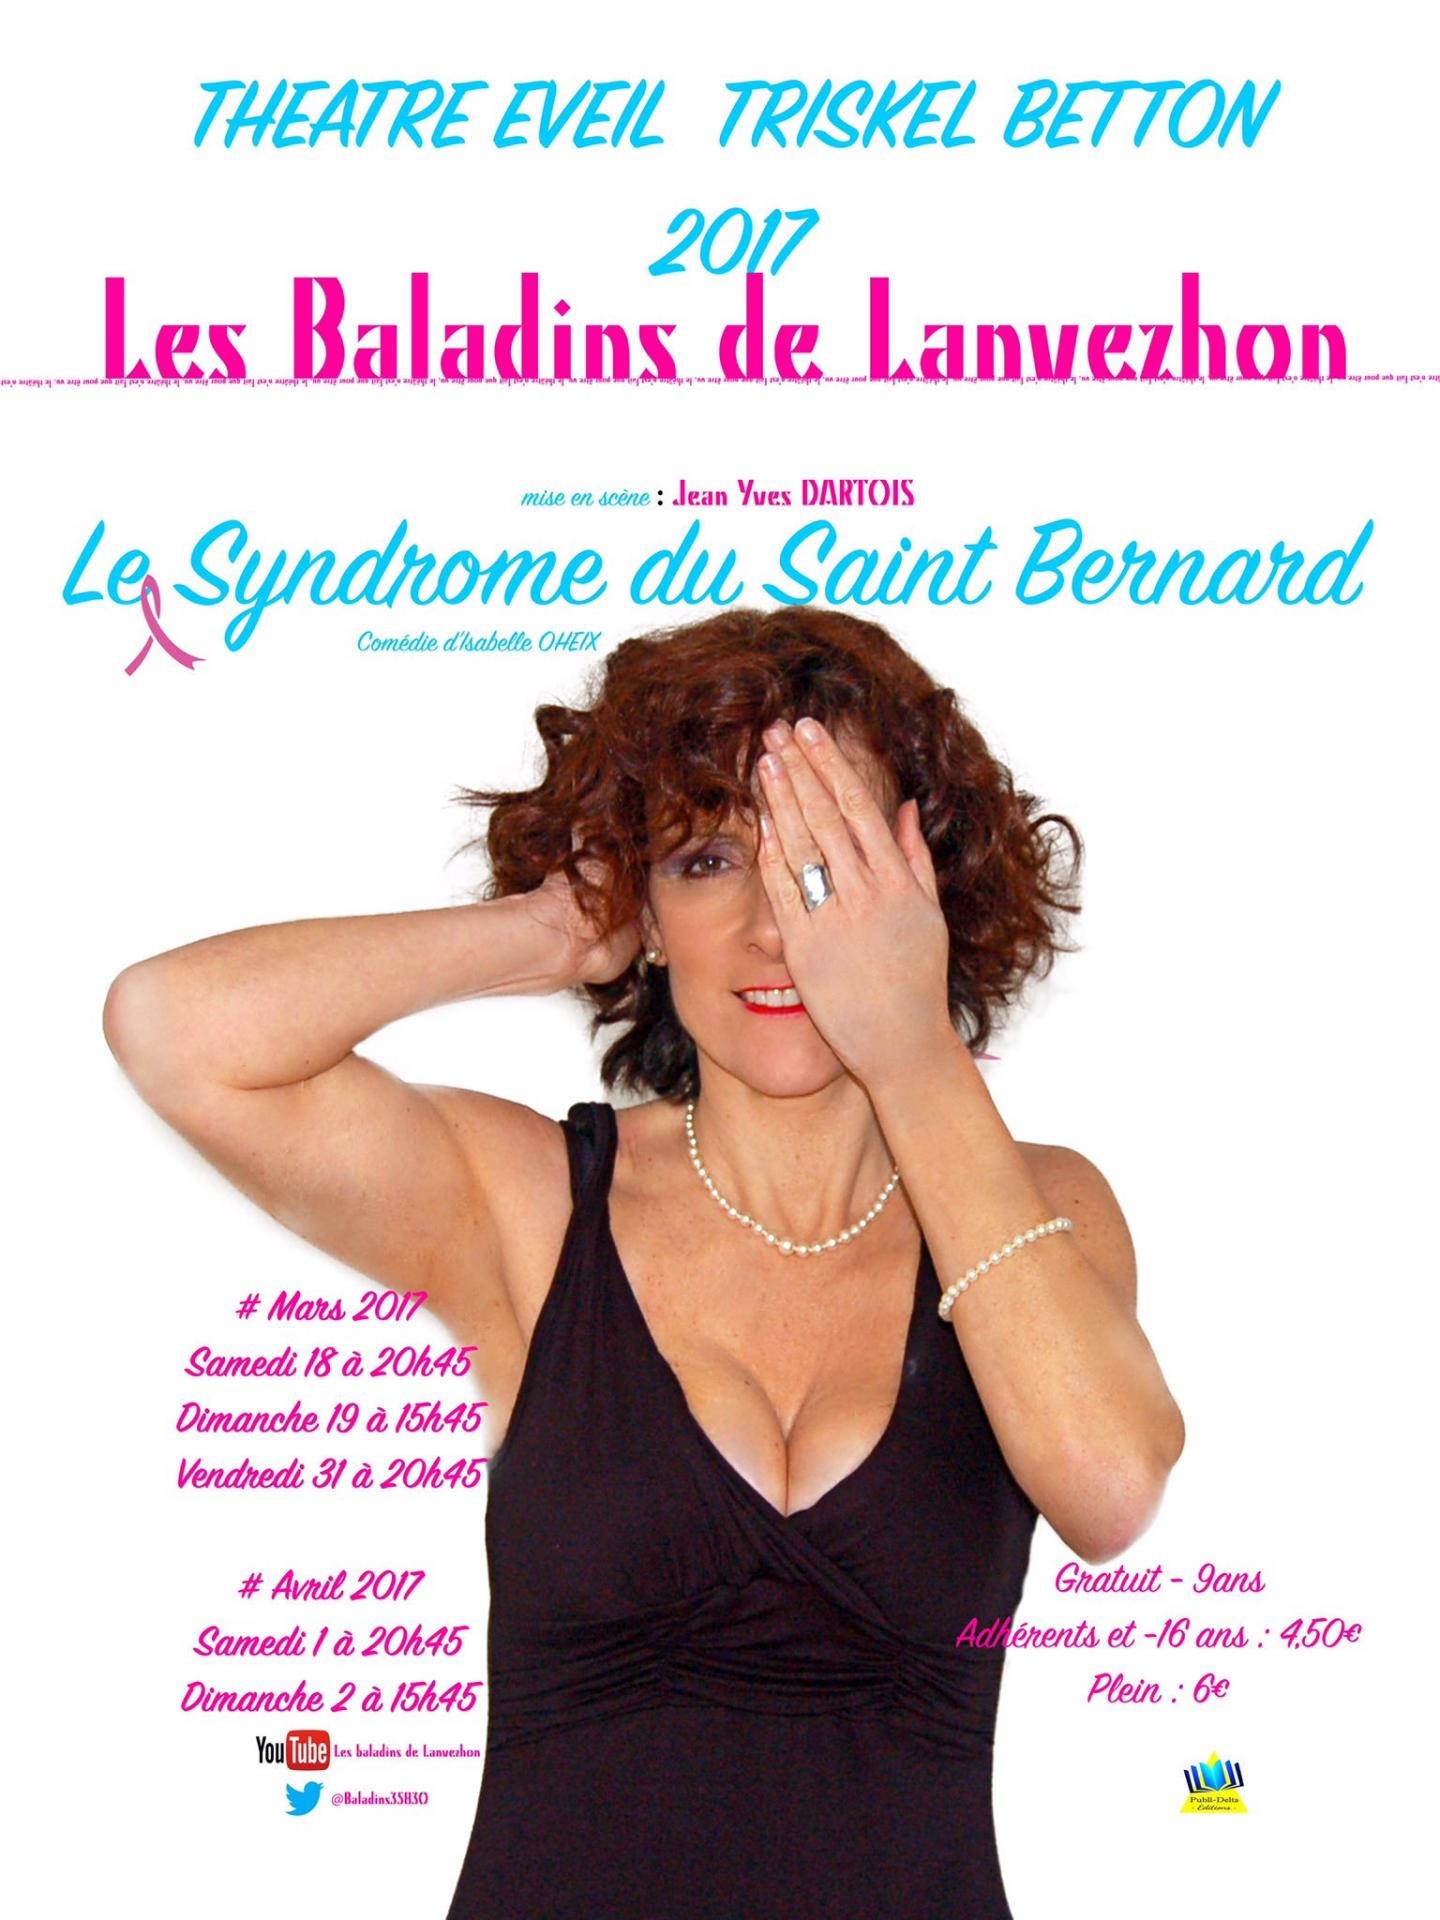 Le Syndrome du St Bernard 2017 officielle affiche les baladins de lanvezhon